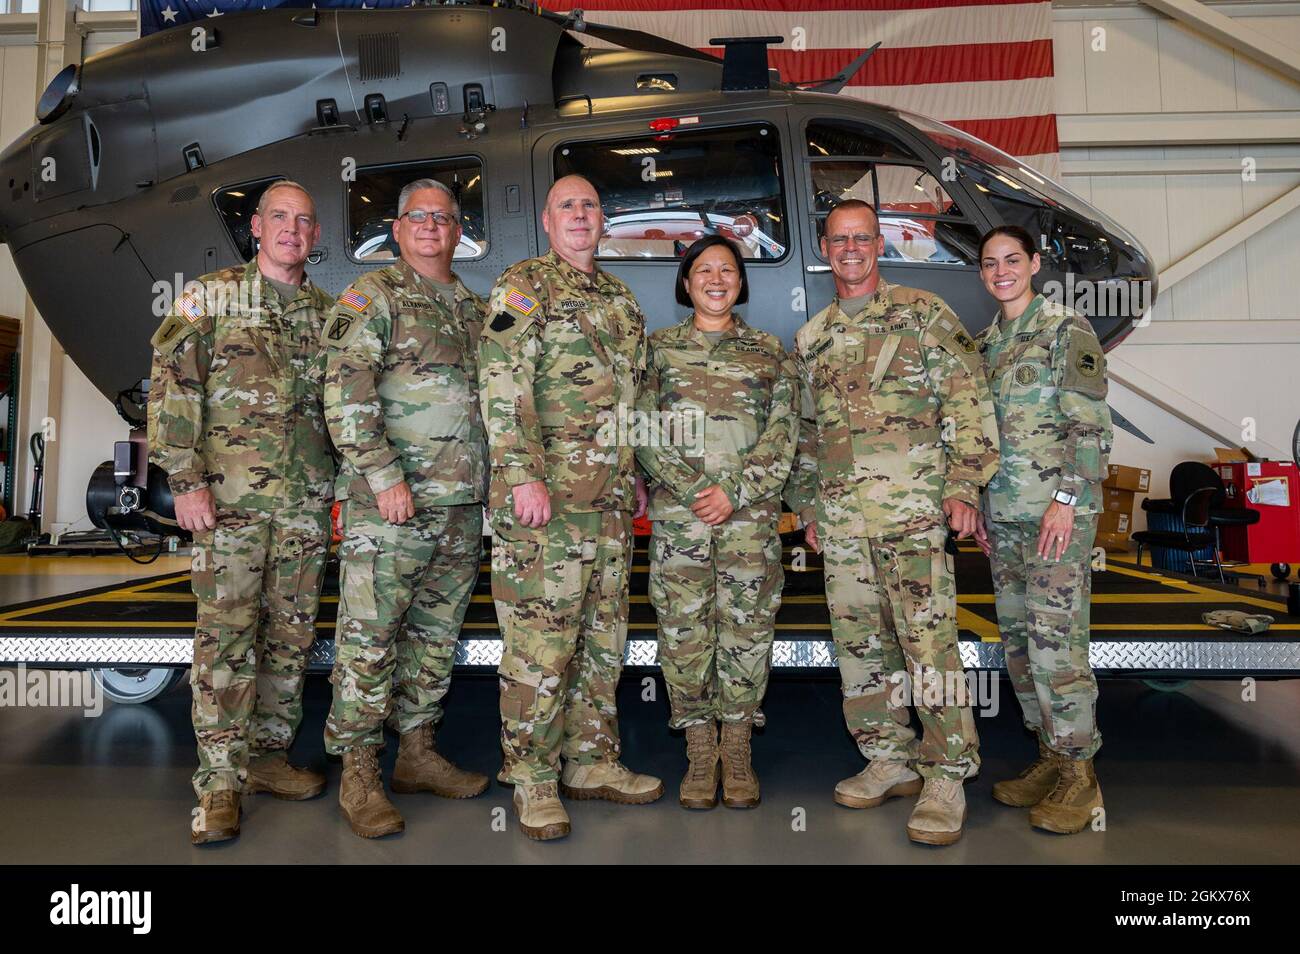 US Army Brig. Gen. Lisa J. Hou, D.O., die Adjutant General von New Jersey, dritte von rechts, posiert nach einer Promotionszeremonie auf der Joint Base McGuire-Dix-Lakehurst, N.J., 15. Juli 2021 für ein Foto mit Chief Warrant Officer 5s. Stockfoto